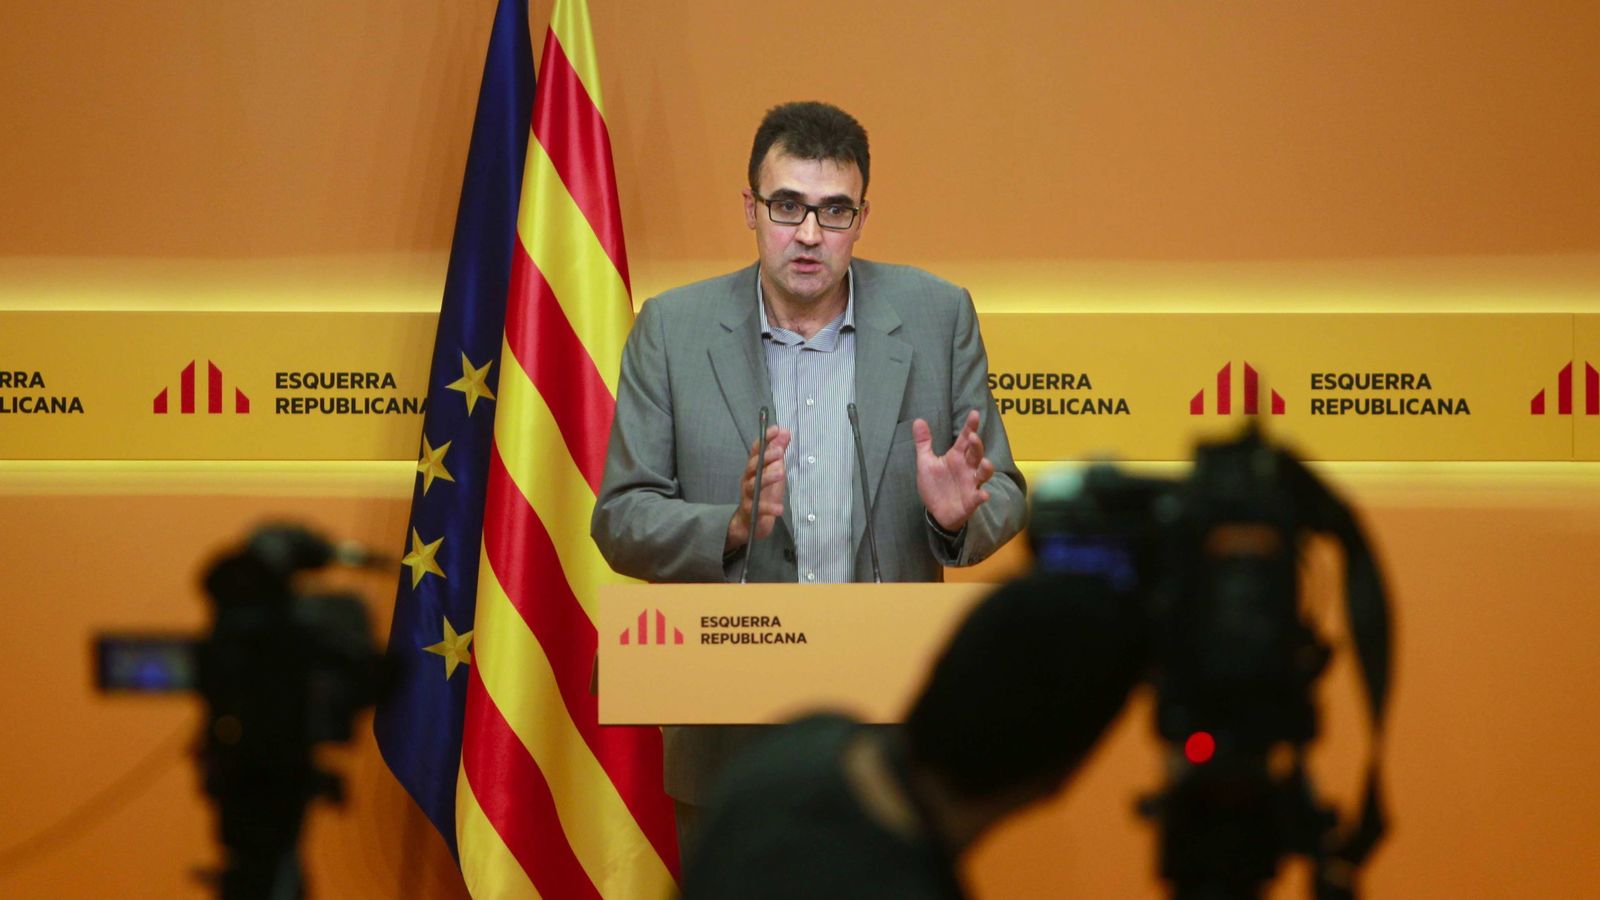 Foto: El nuevo secretario de Hacienda, el republicano Lluís Salvadó. (EFE)